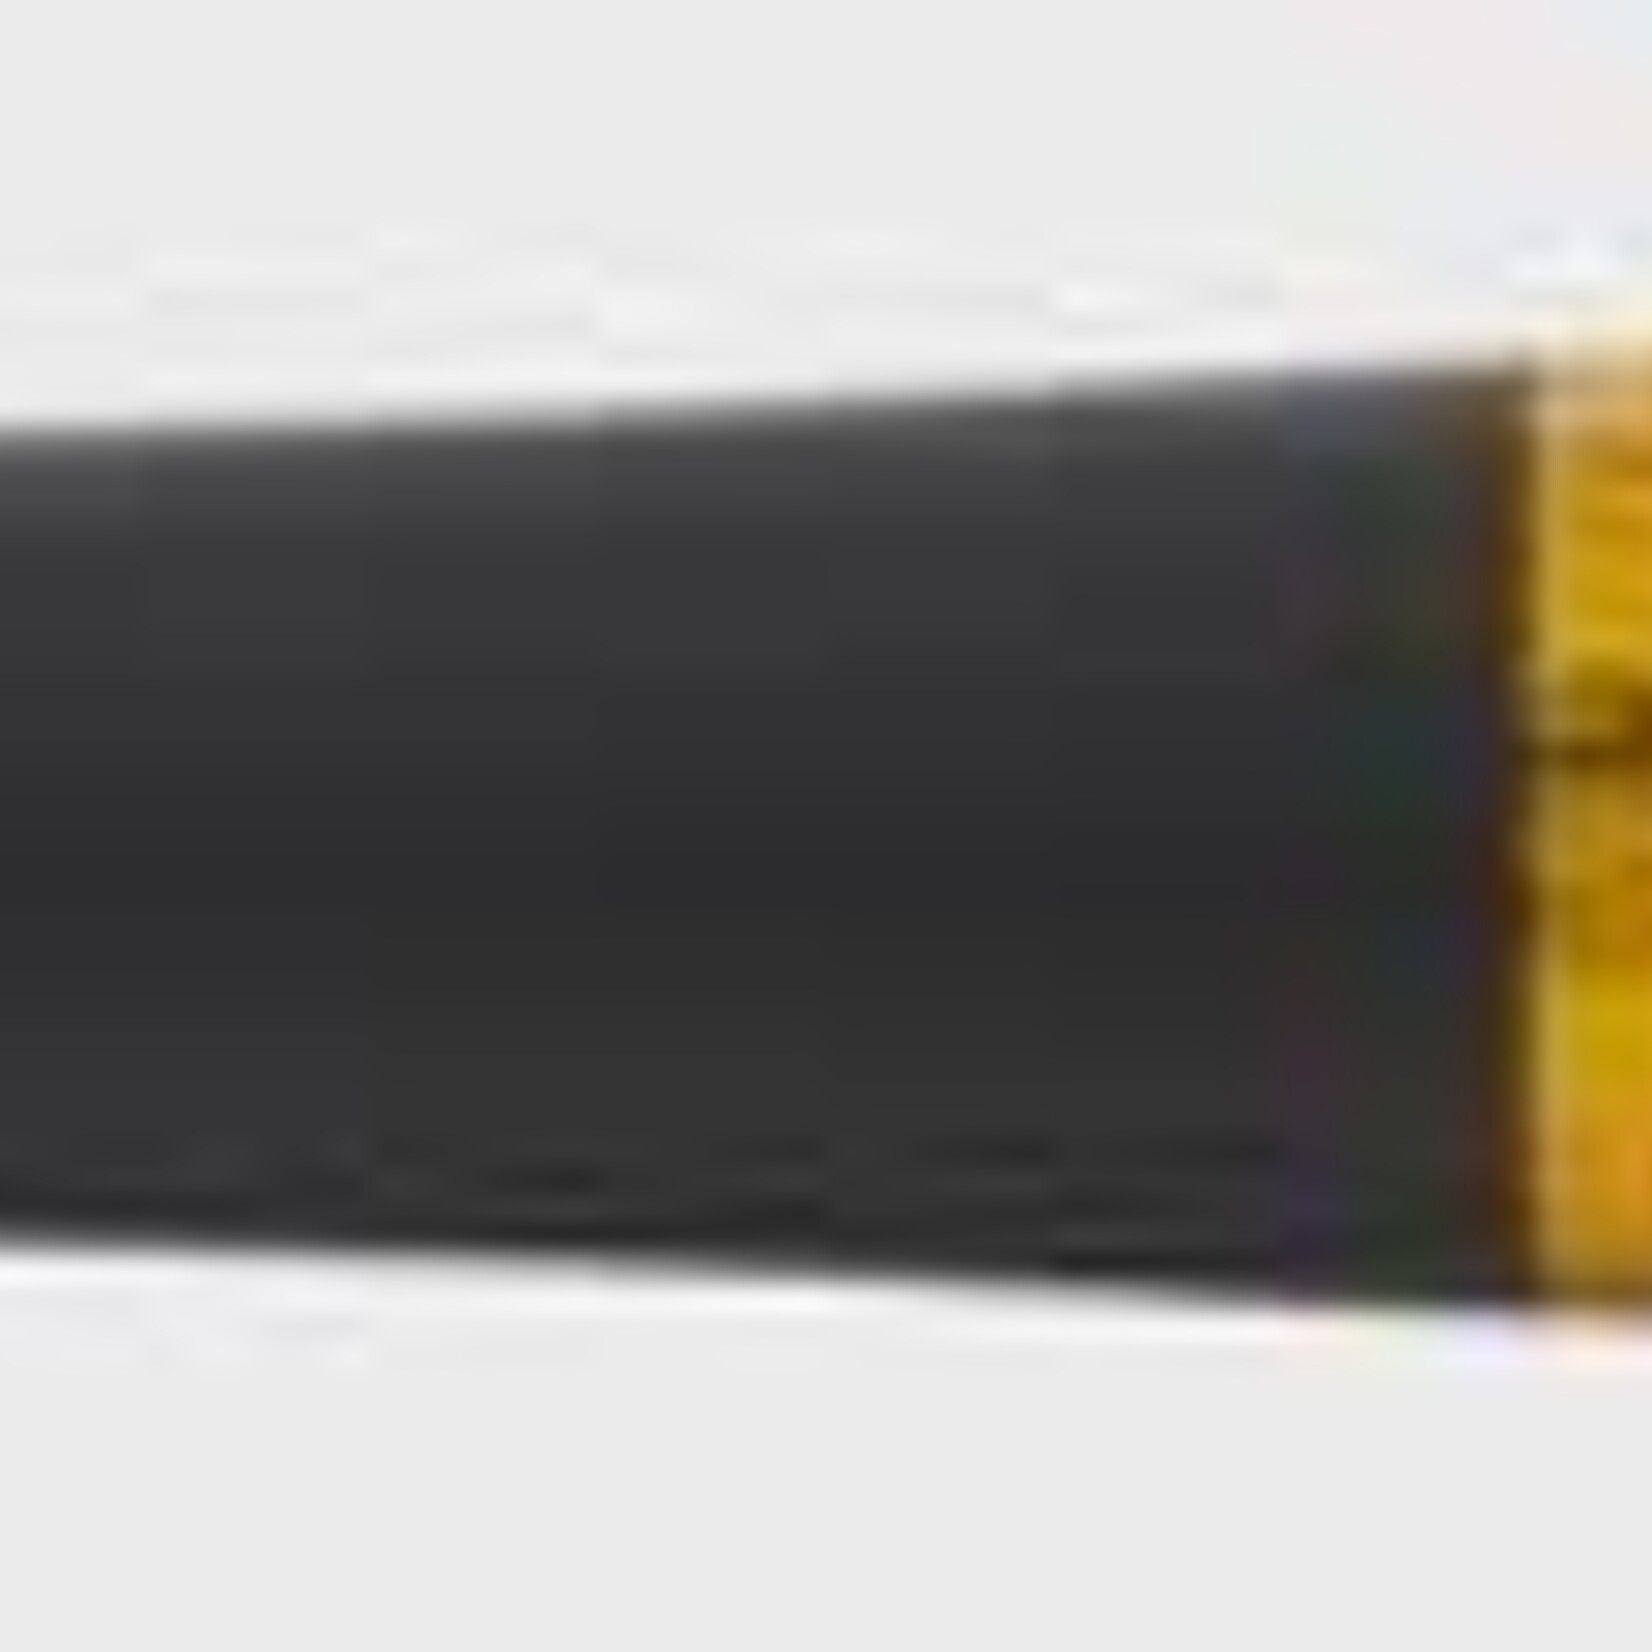 Rawlings Rawlings Baseball Bat, Pro Preferred BH3 Maple , Wood (45 Day Warranty)